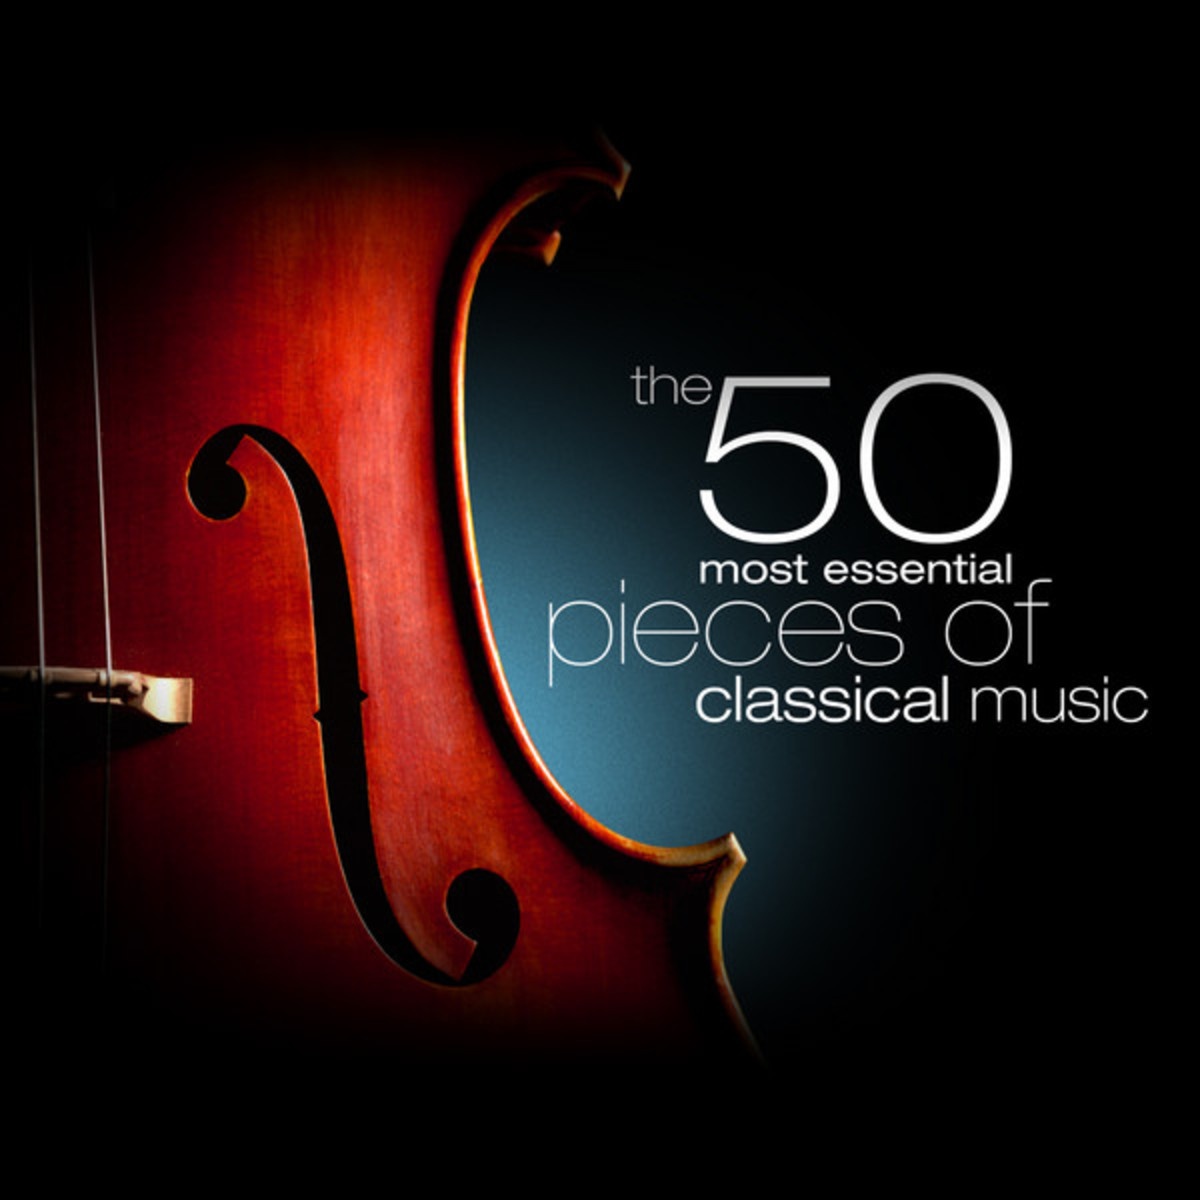 Concerto for Violin and Orchestra Op. 64 in E Minor: I. Allegro molto appassionato